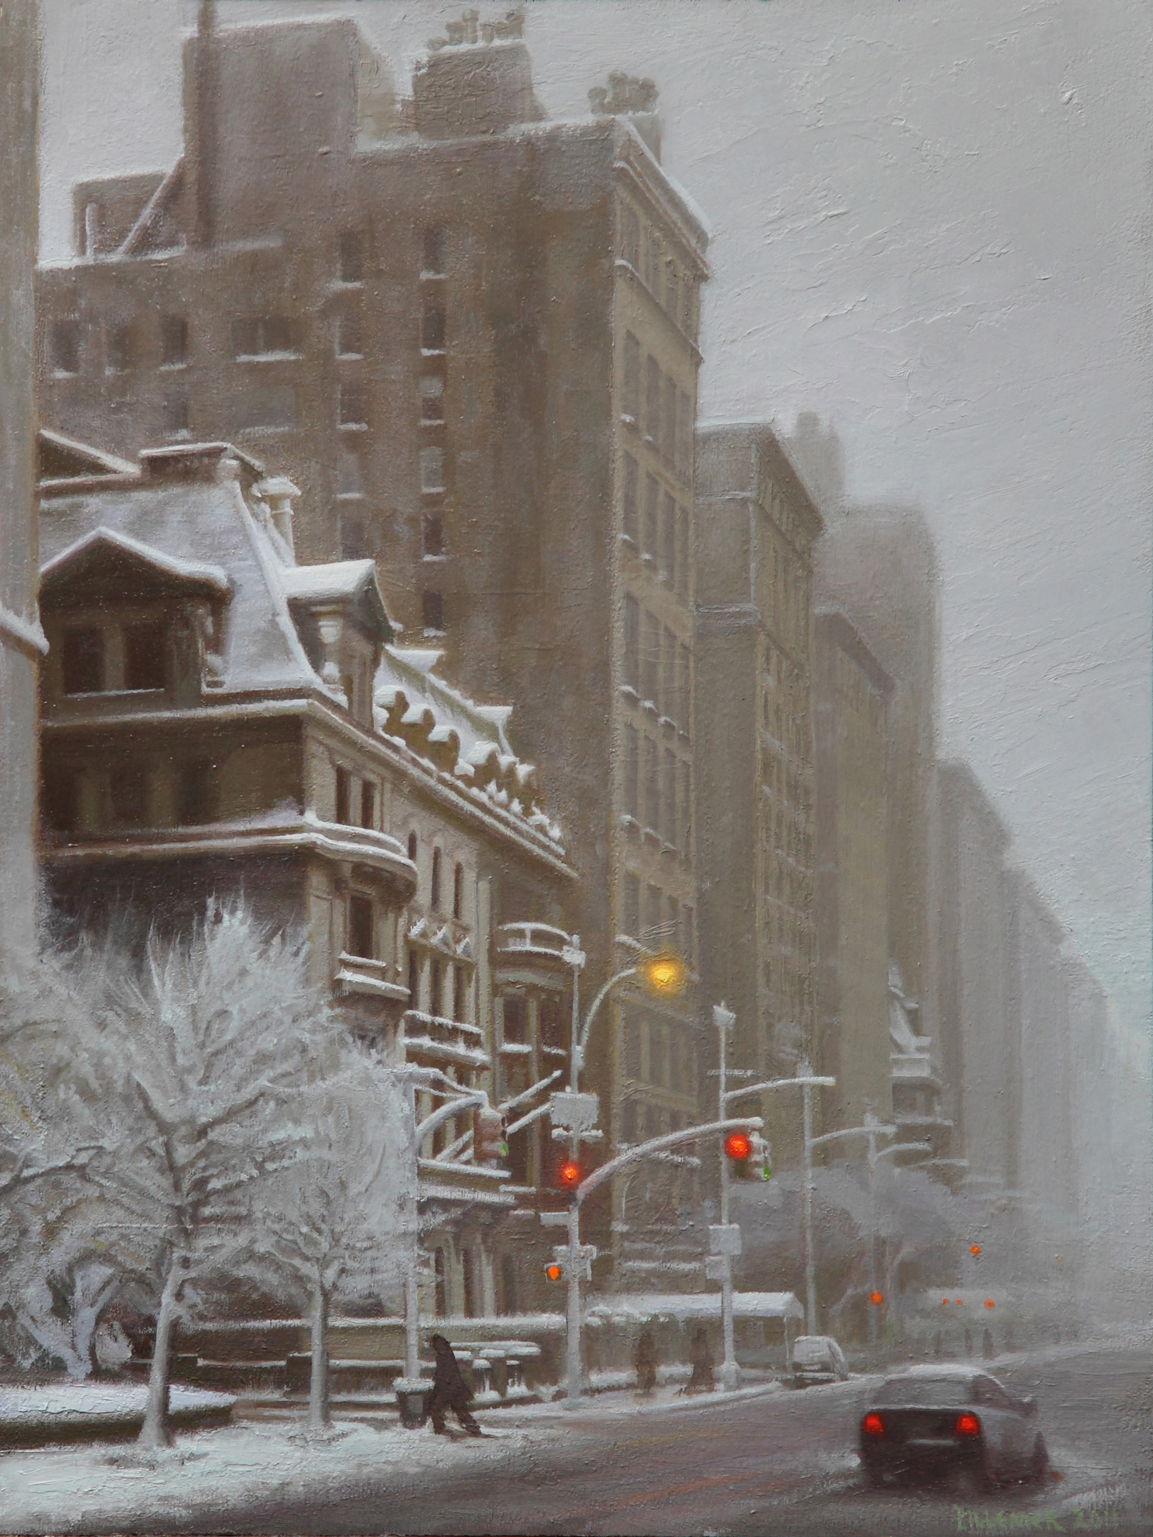 Fifth Avenue in Winter